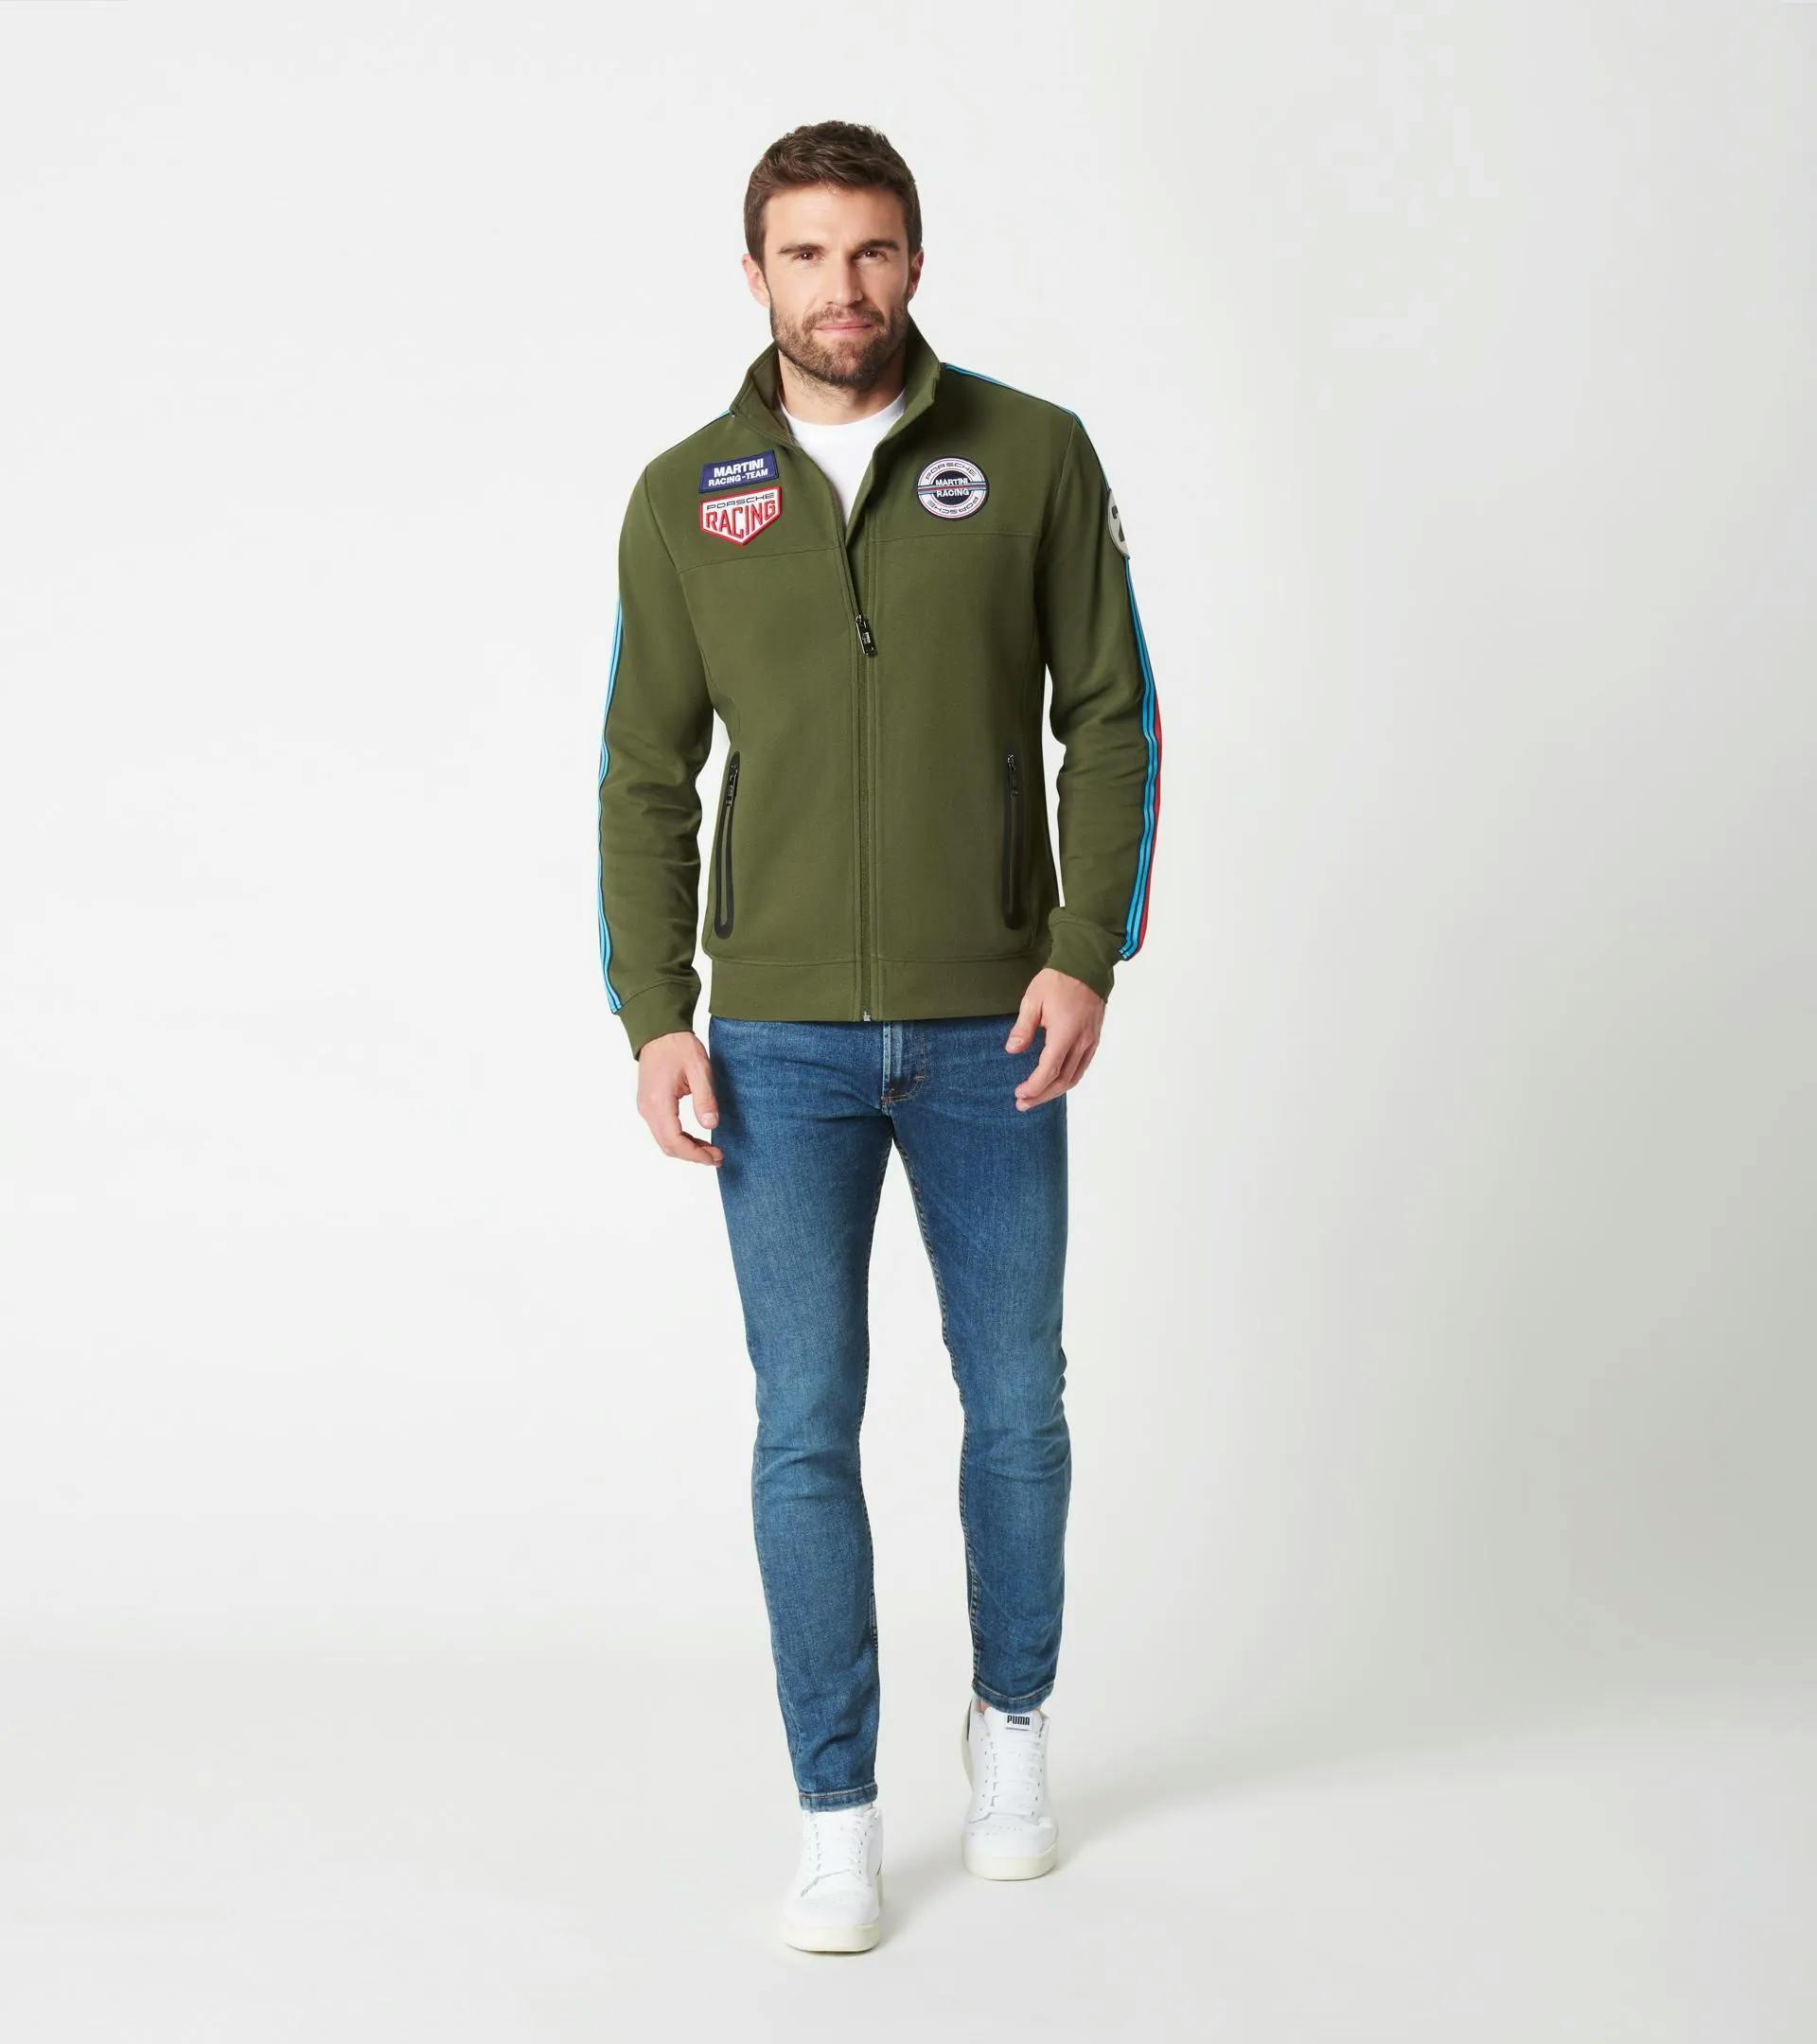 Zip-up sweatshirt jacket – MARTINI RACING® 5